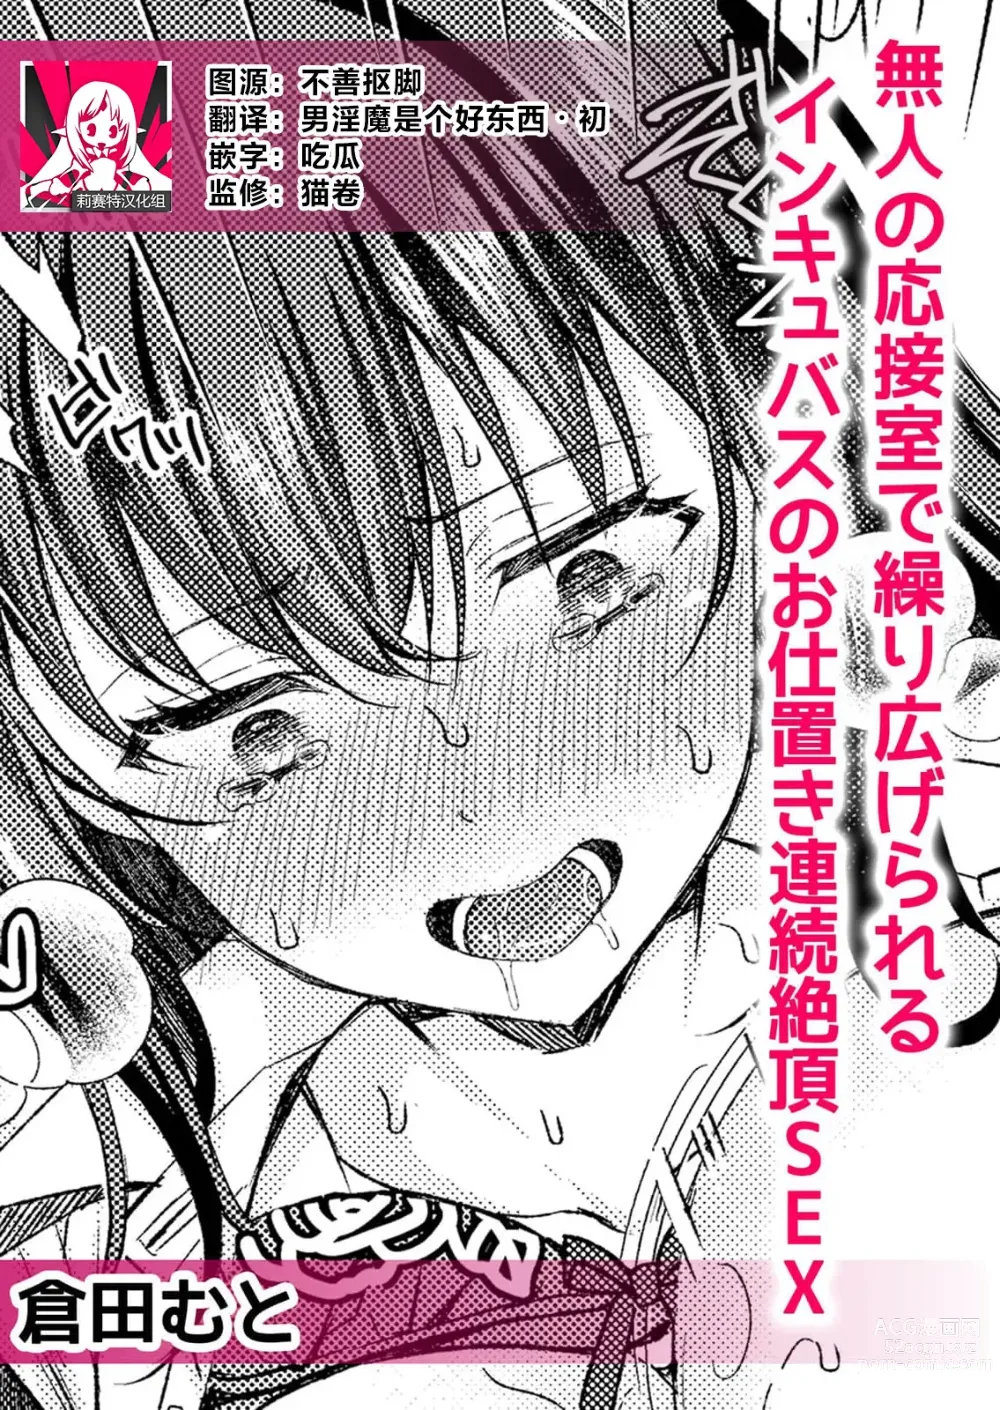 Page 1 of manga 在空无一人的接待室内被他肏开因受到淫魔的惩罚而连续高潮不止的SEX